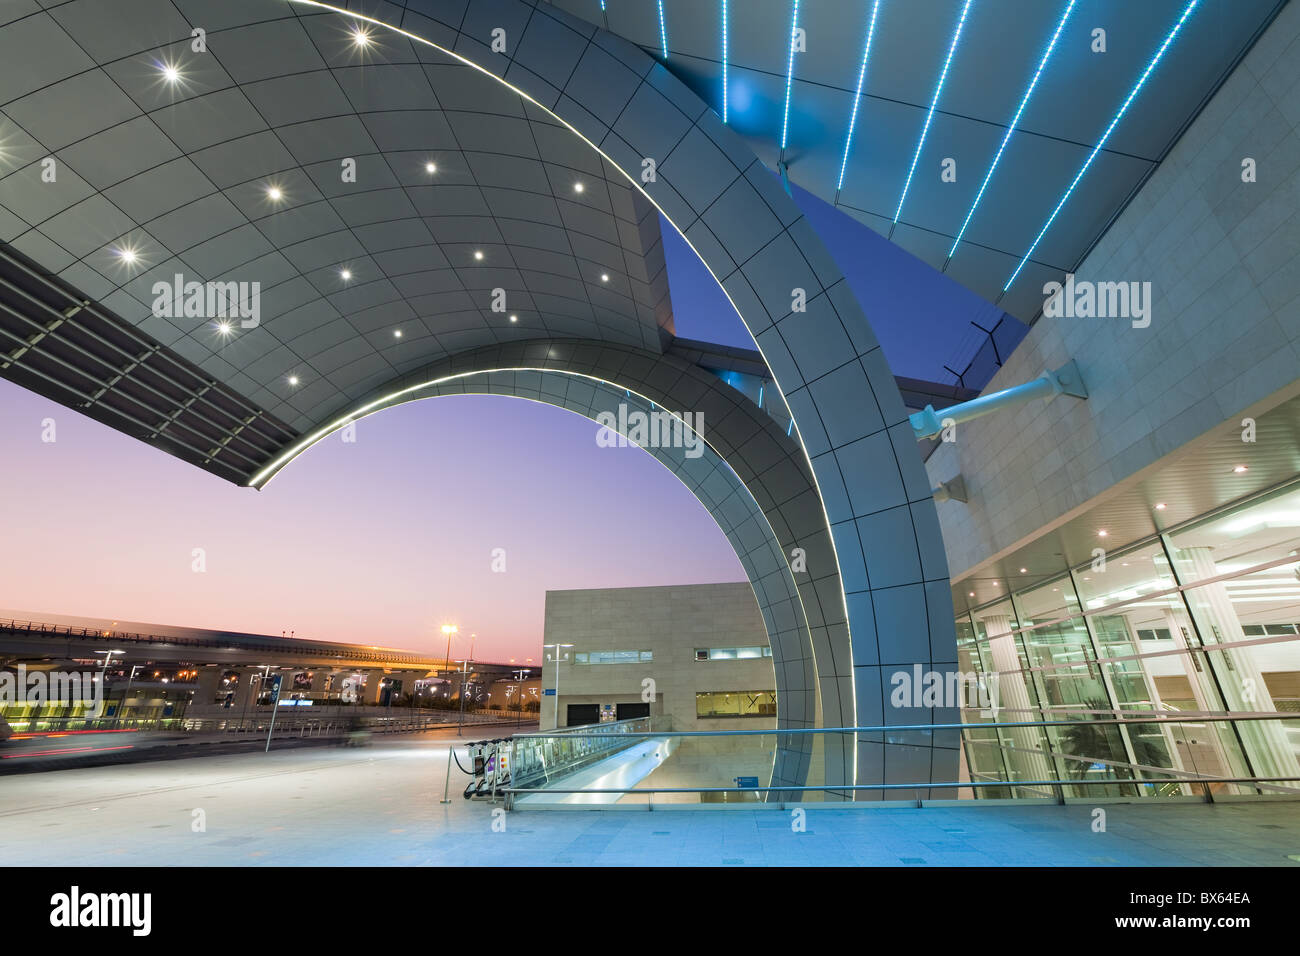 L'architecture moderne et élégante du Terminal 3 ouvert en 2010, l'Aéroport International de Dubai, Dubaï, Émirats arabes unis, Moyen Orient Banque D'Images